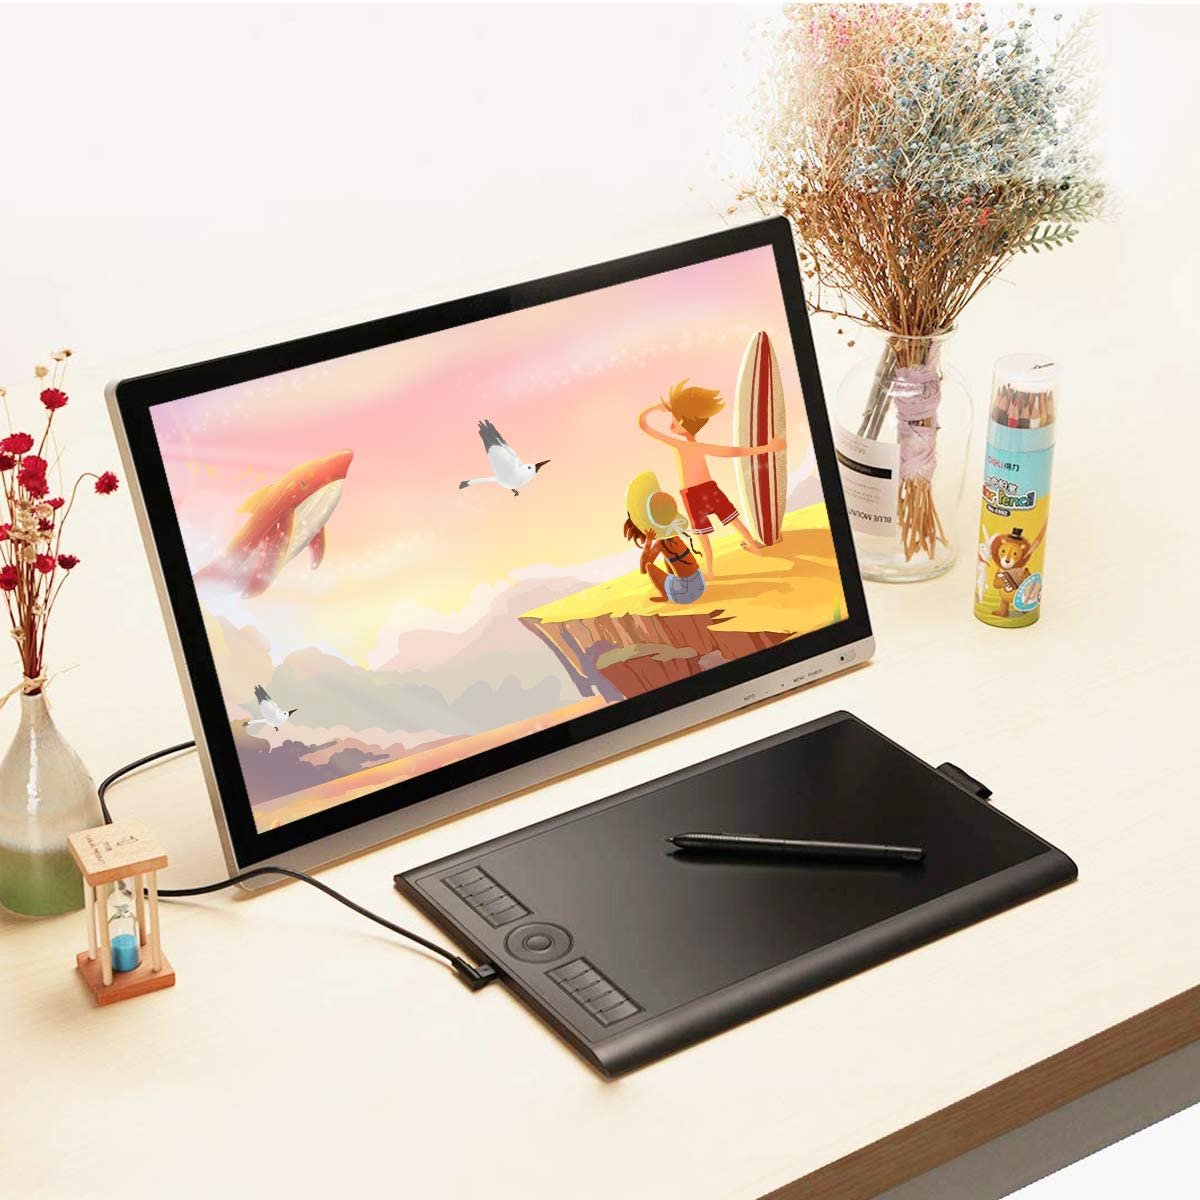 GAOMON M10K 2018-versie - 10 x 6,25 inch grafische tablet met passieve stylus en 8192 drukniveaus (M10K2018)